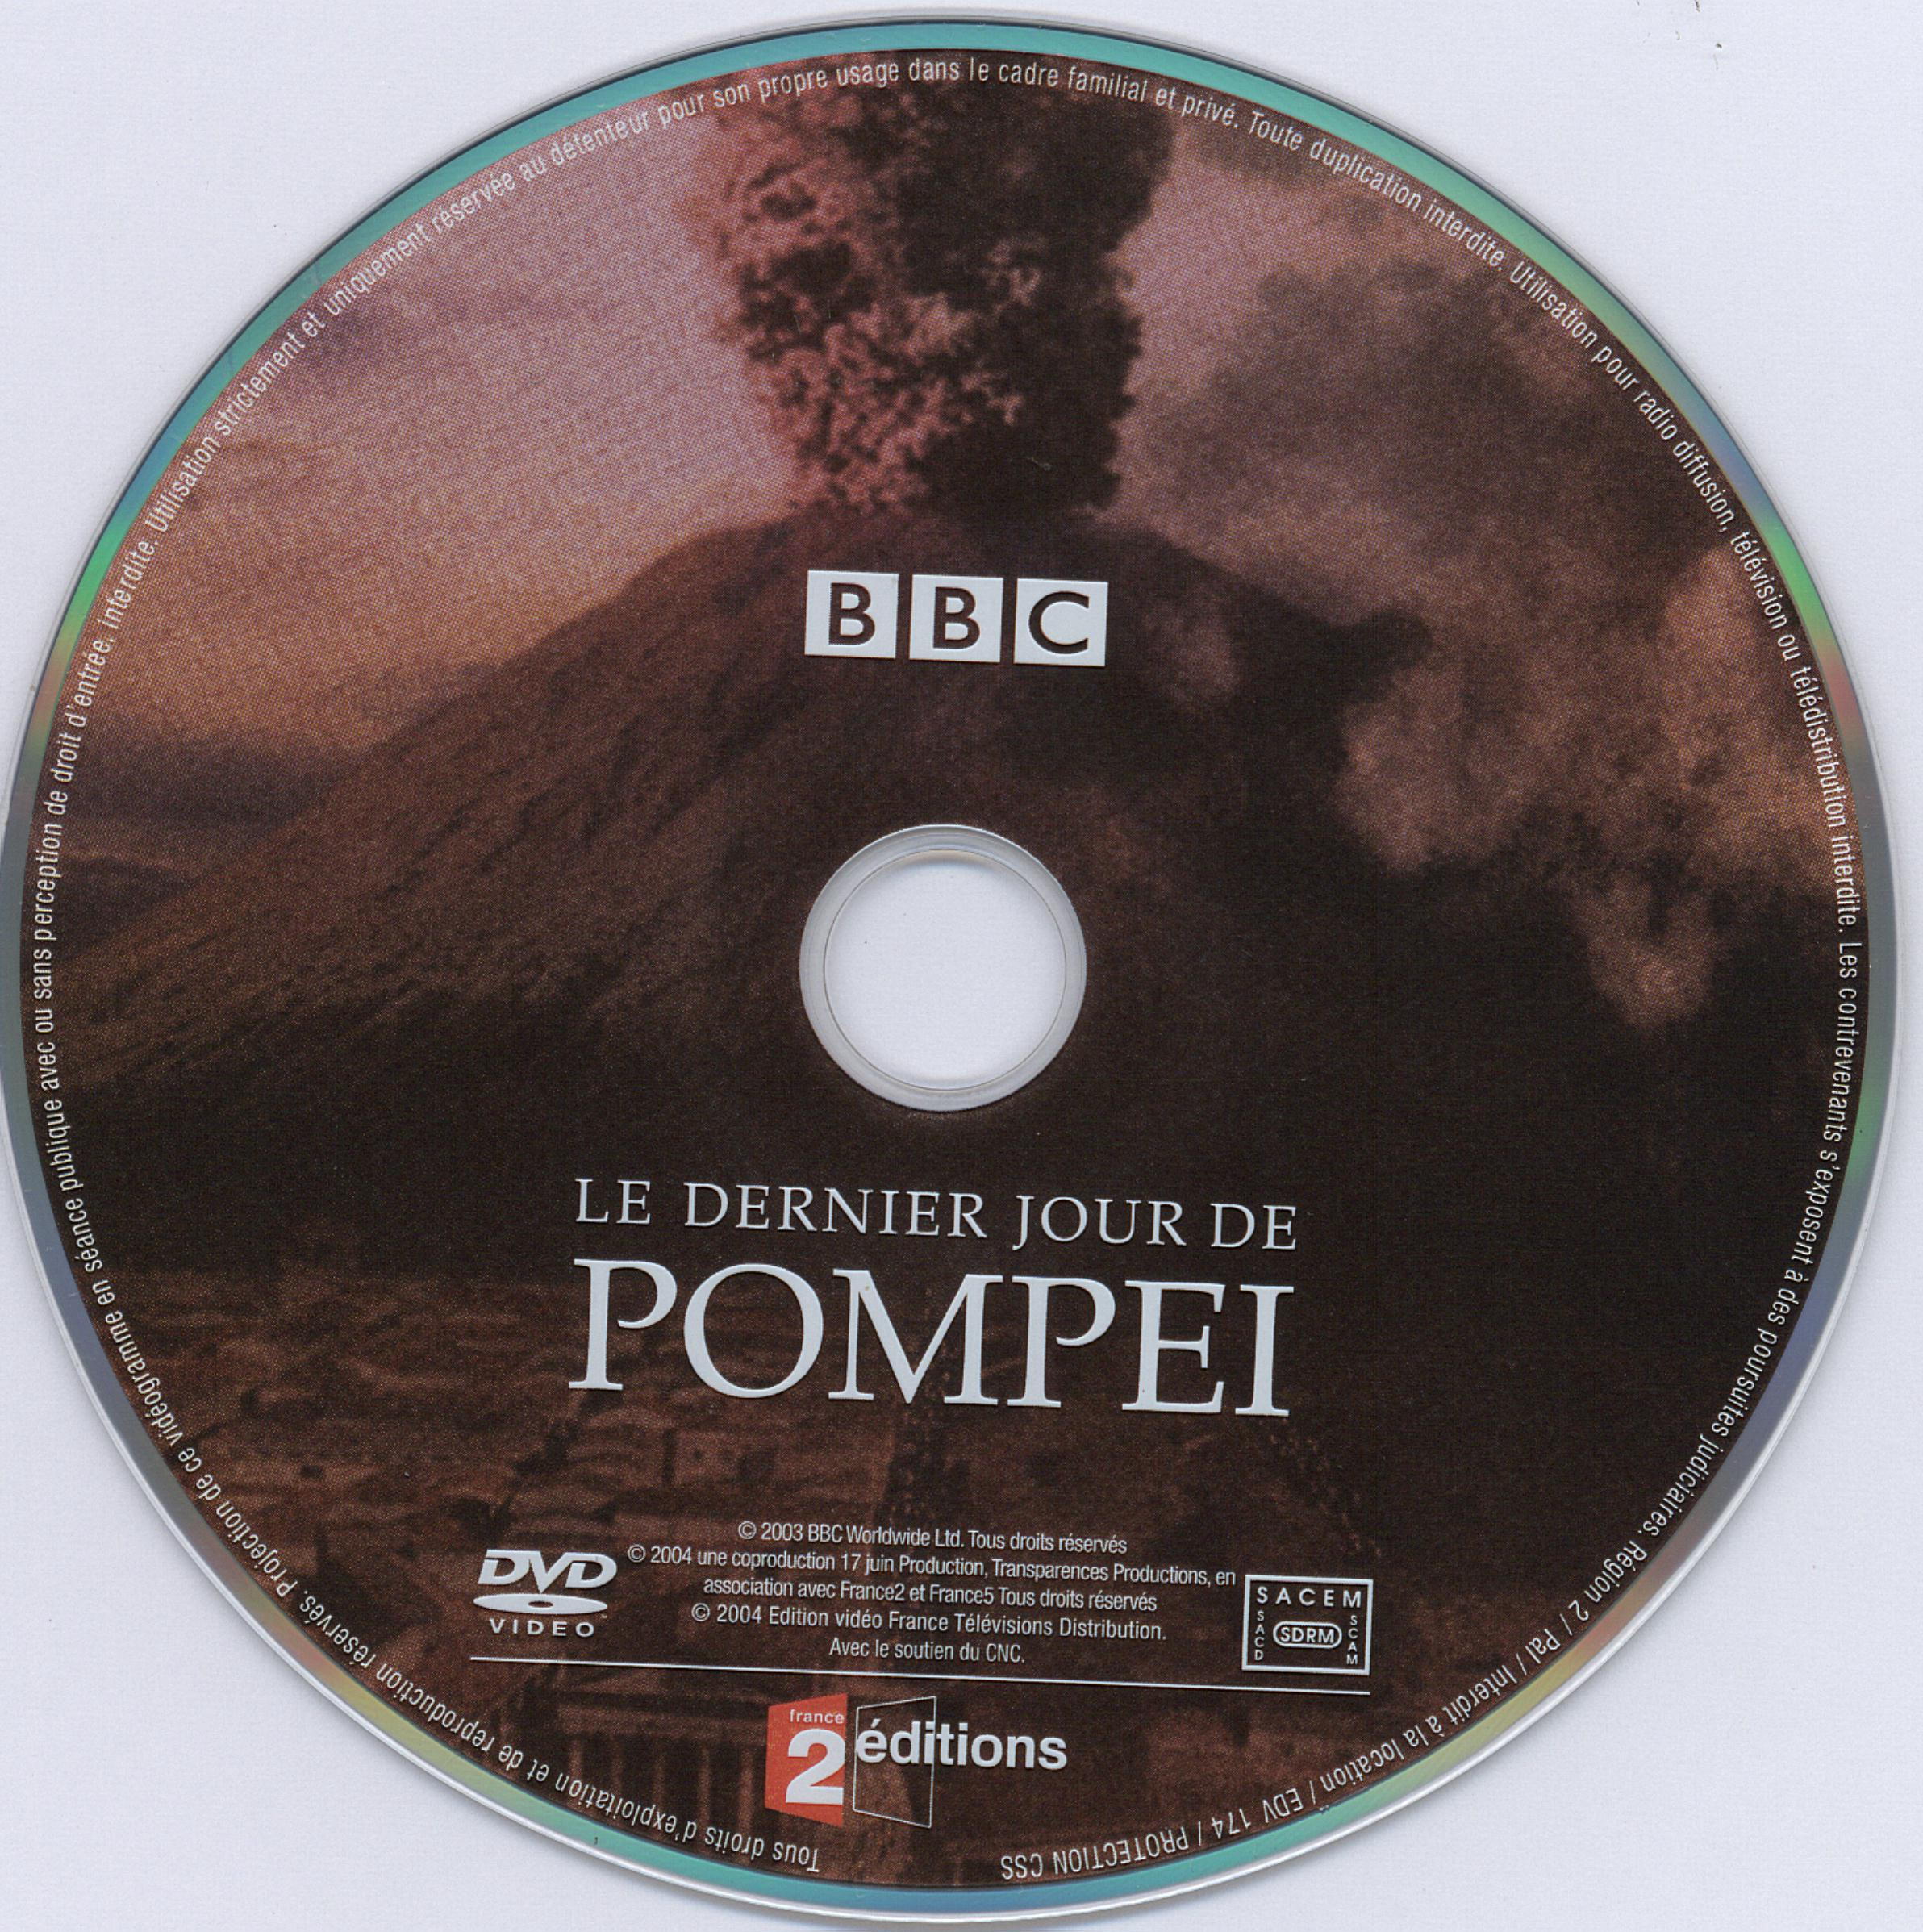 Le dernier jour de pompei